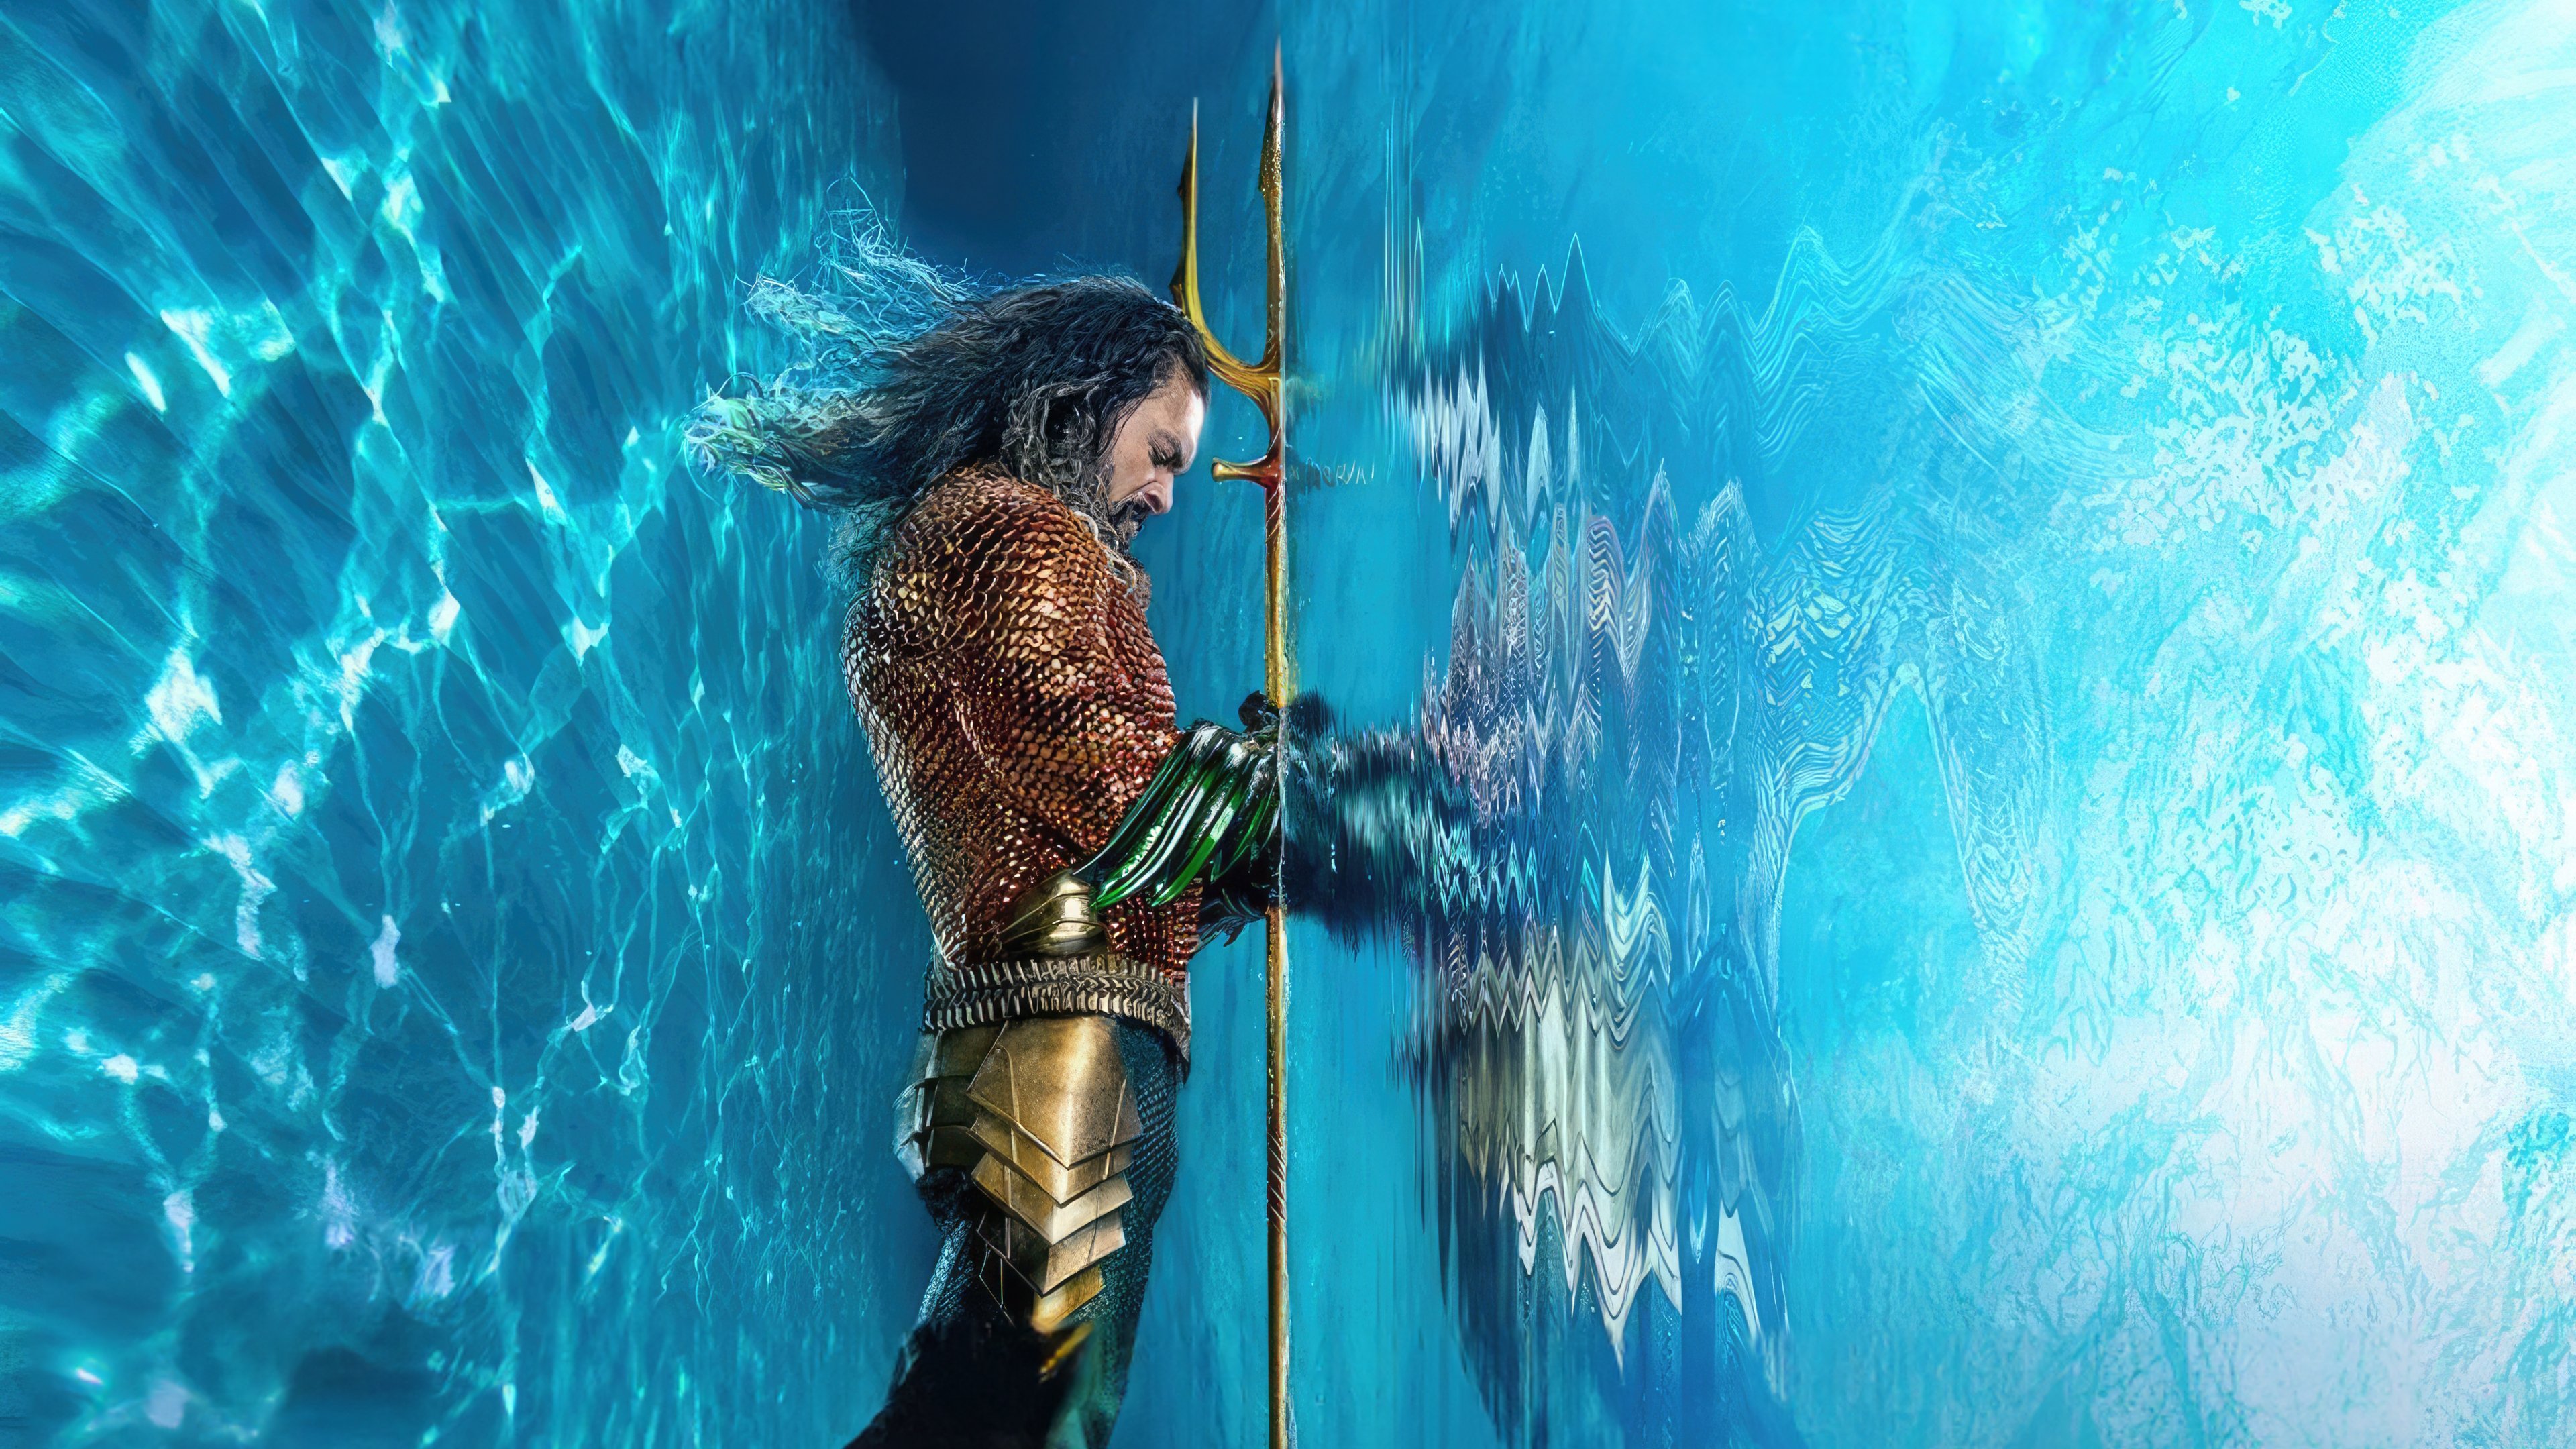 Fondos de pantalla Aquaman y el Reino Perdido